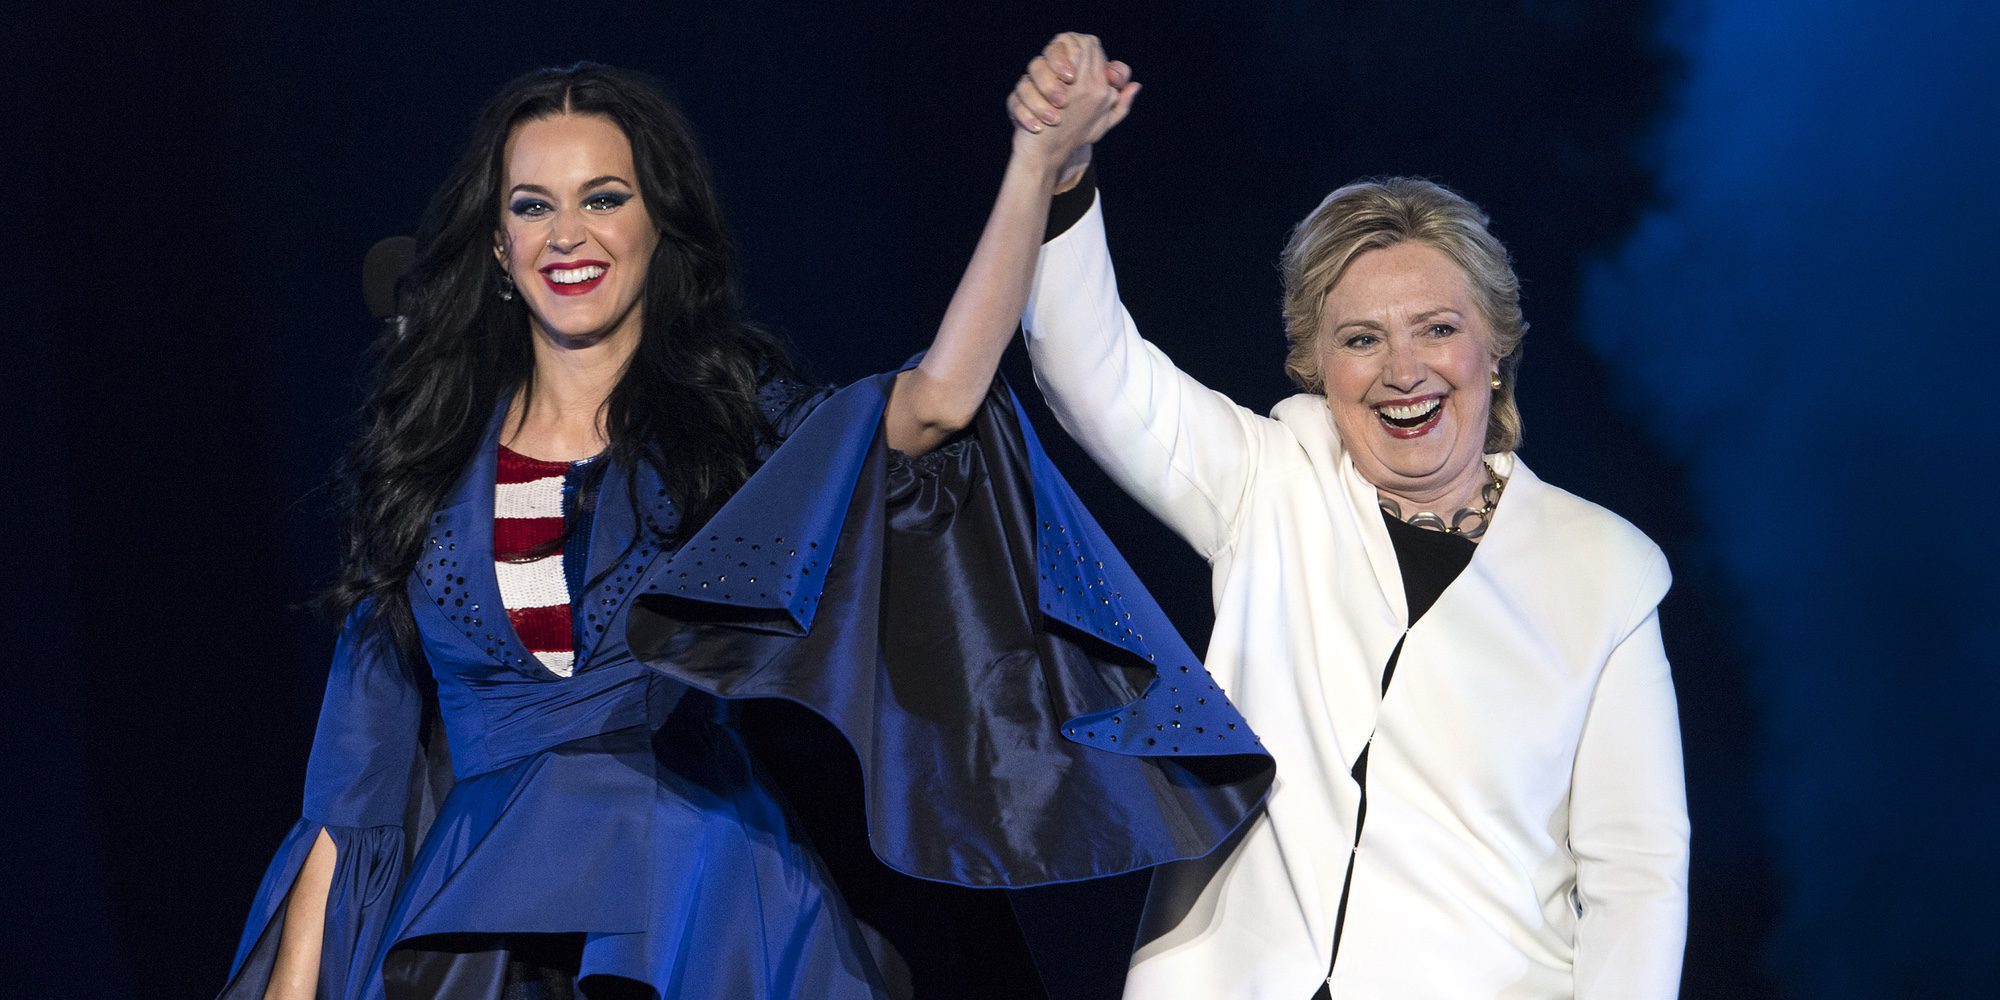 Katy Perry pide el voto para Hillary Clinton con una capa muy significativa: "Estoy con la señora Presidenta"